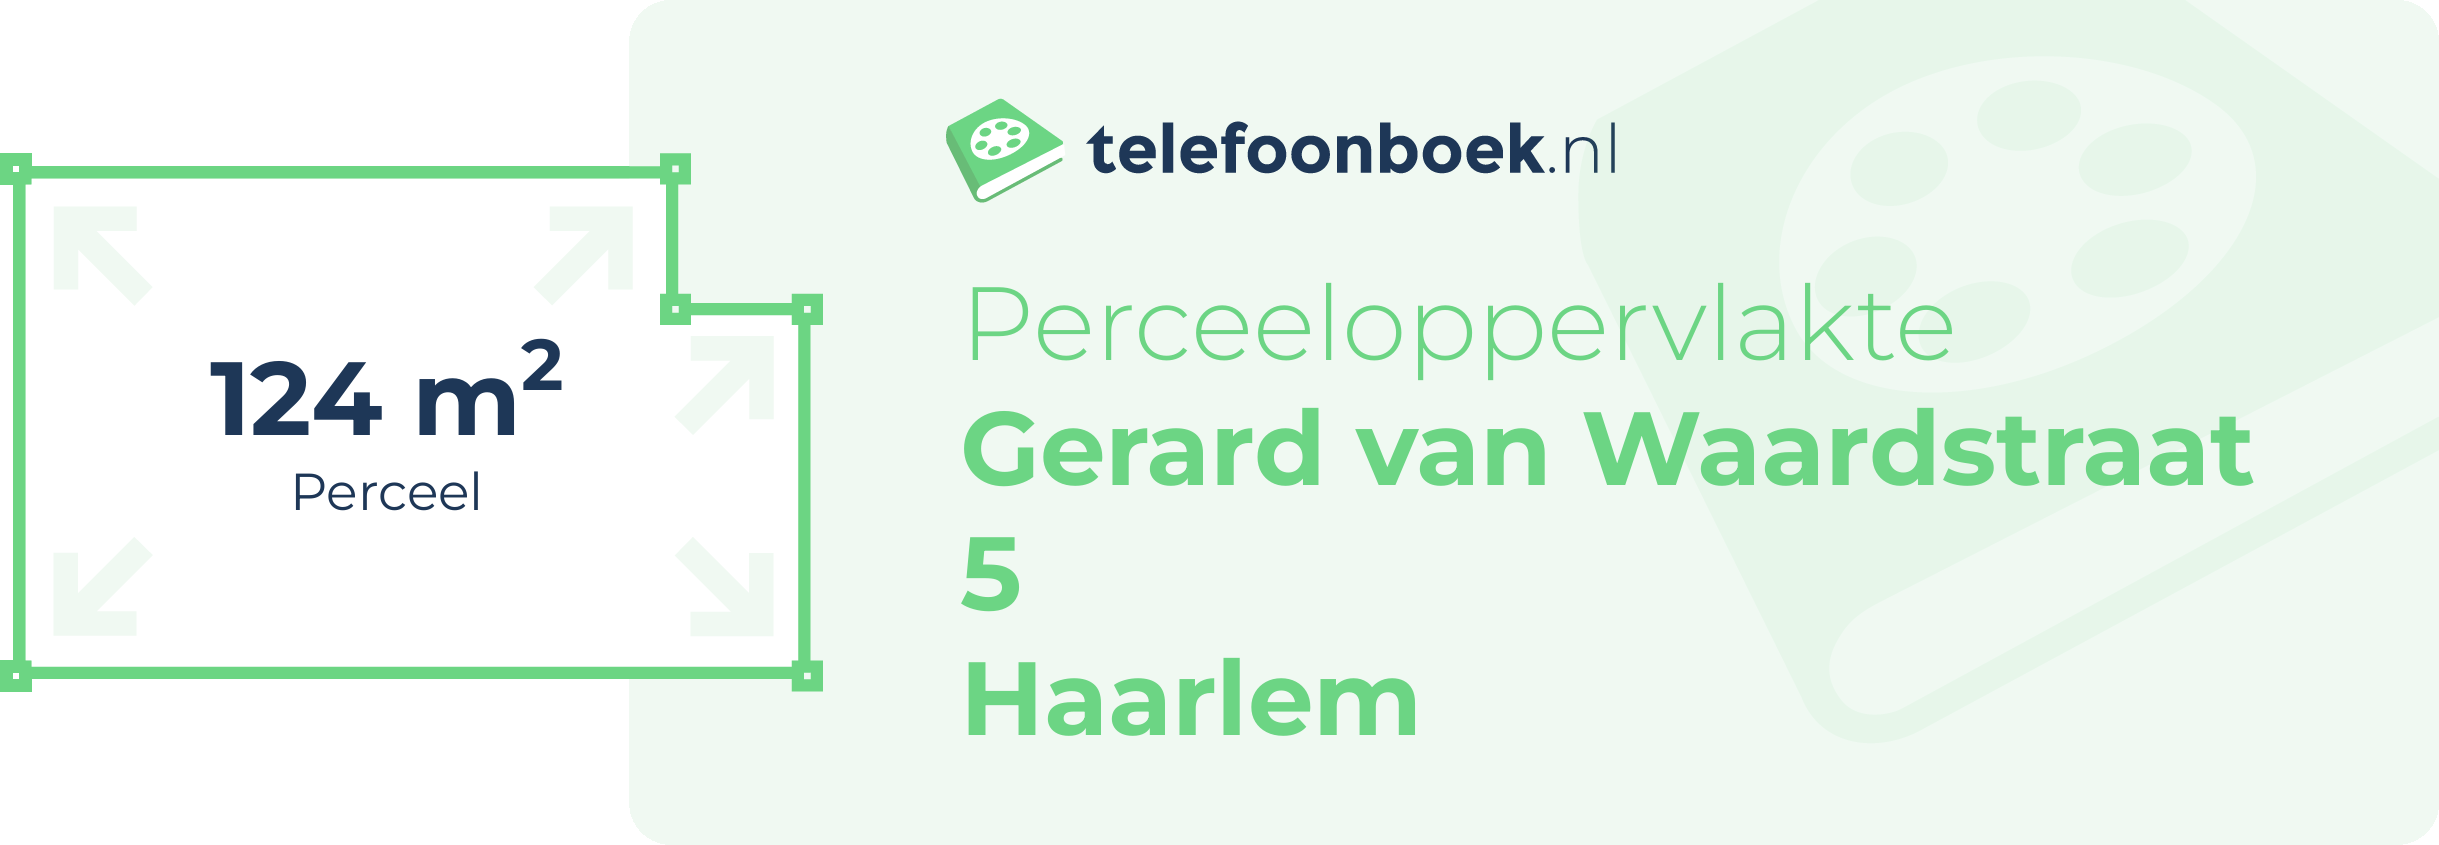 Perceeloppervlakte Gerard Van Waardstraat 5 Haarlem